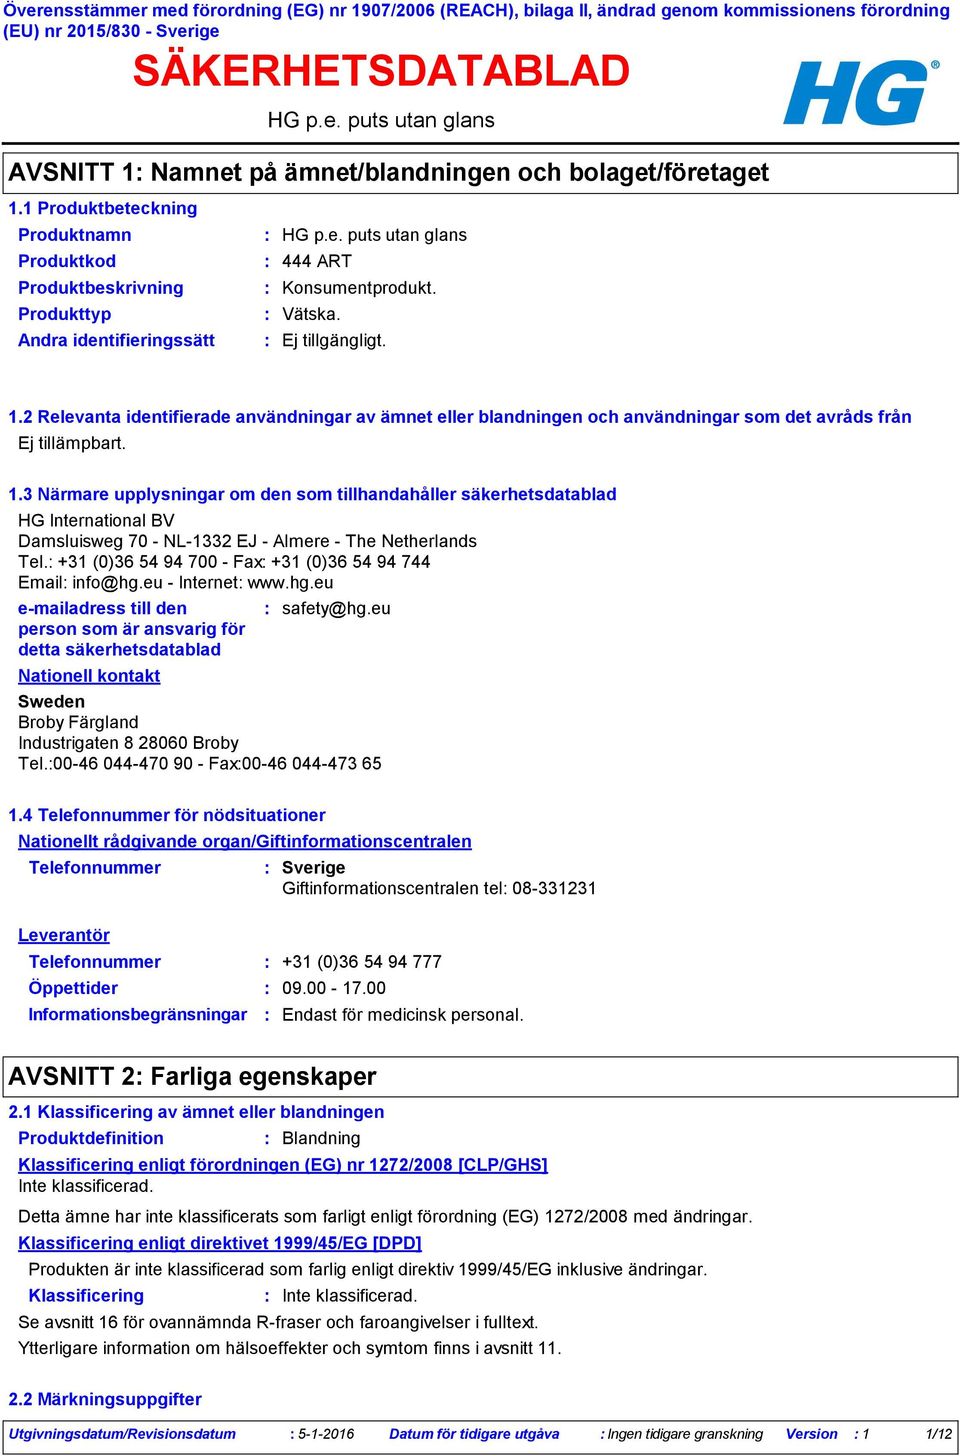 3 Närmare upplysningar om den som tillhandahåller säkerhetsdatablad HG International BV Damsluisweg 70 NL1332 EJ Almere The Netherlands Tel. +31 (0)36 54 94 700 Fax +31 (0)36 54 94 744 Email info@hg.